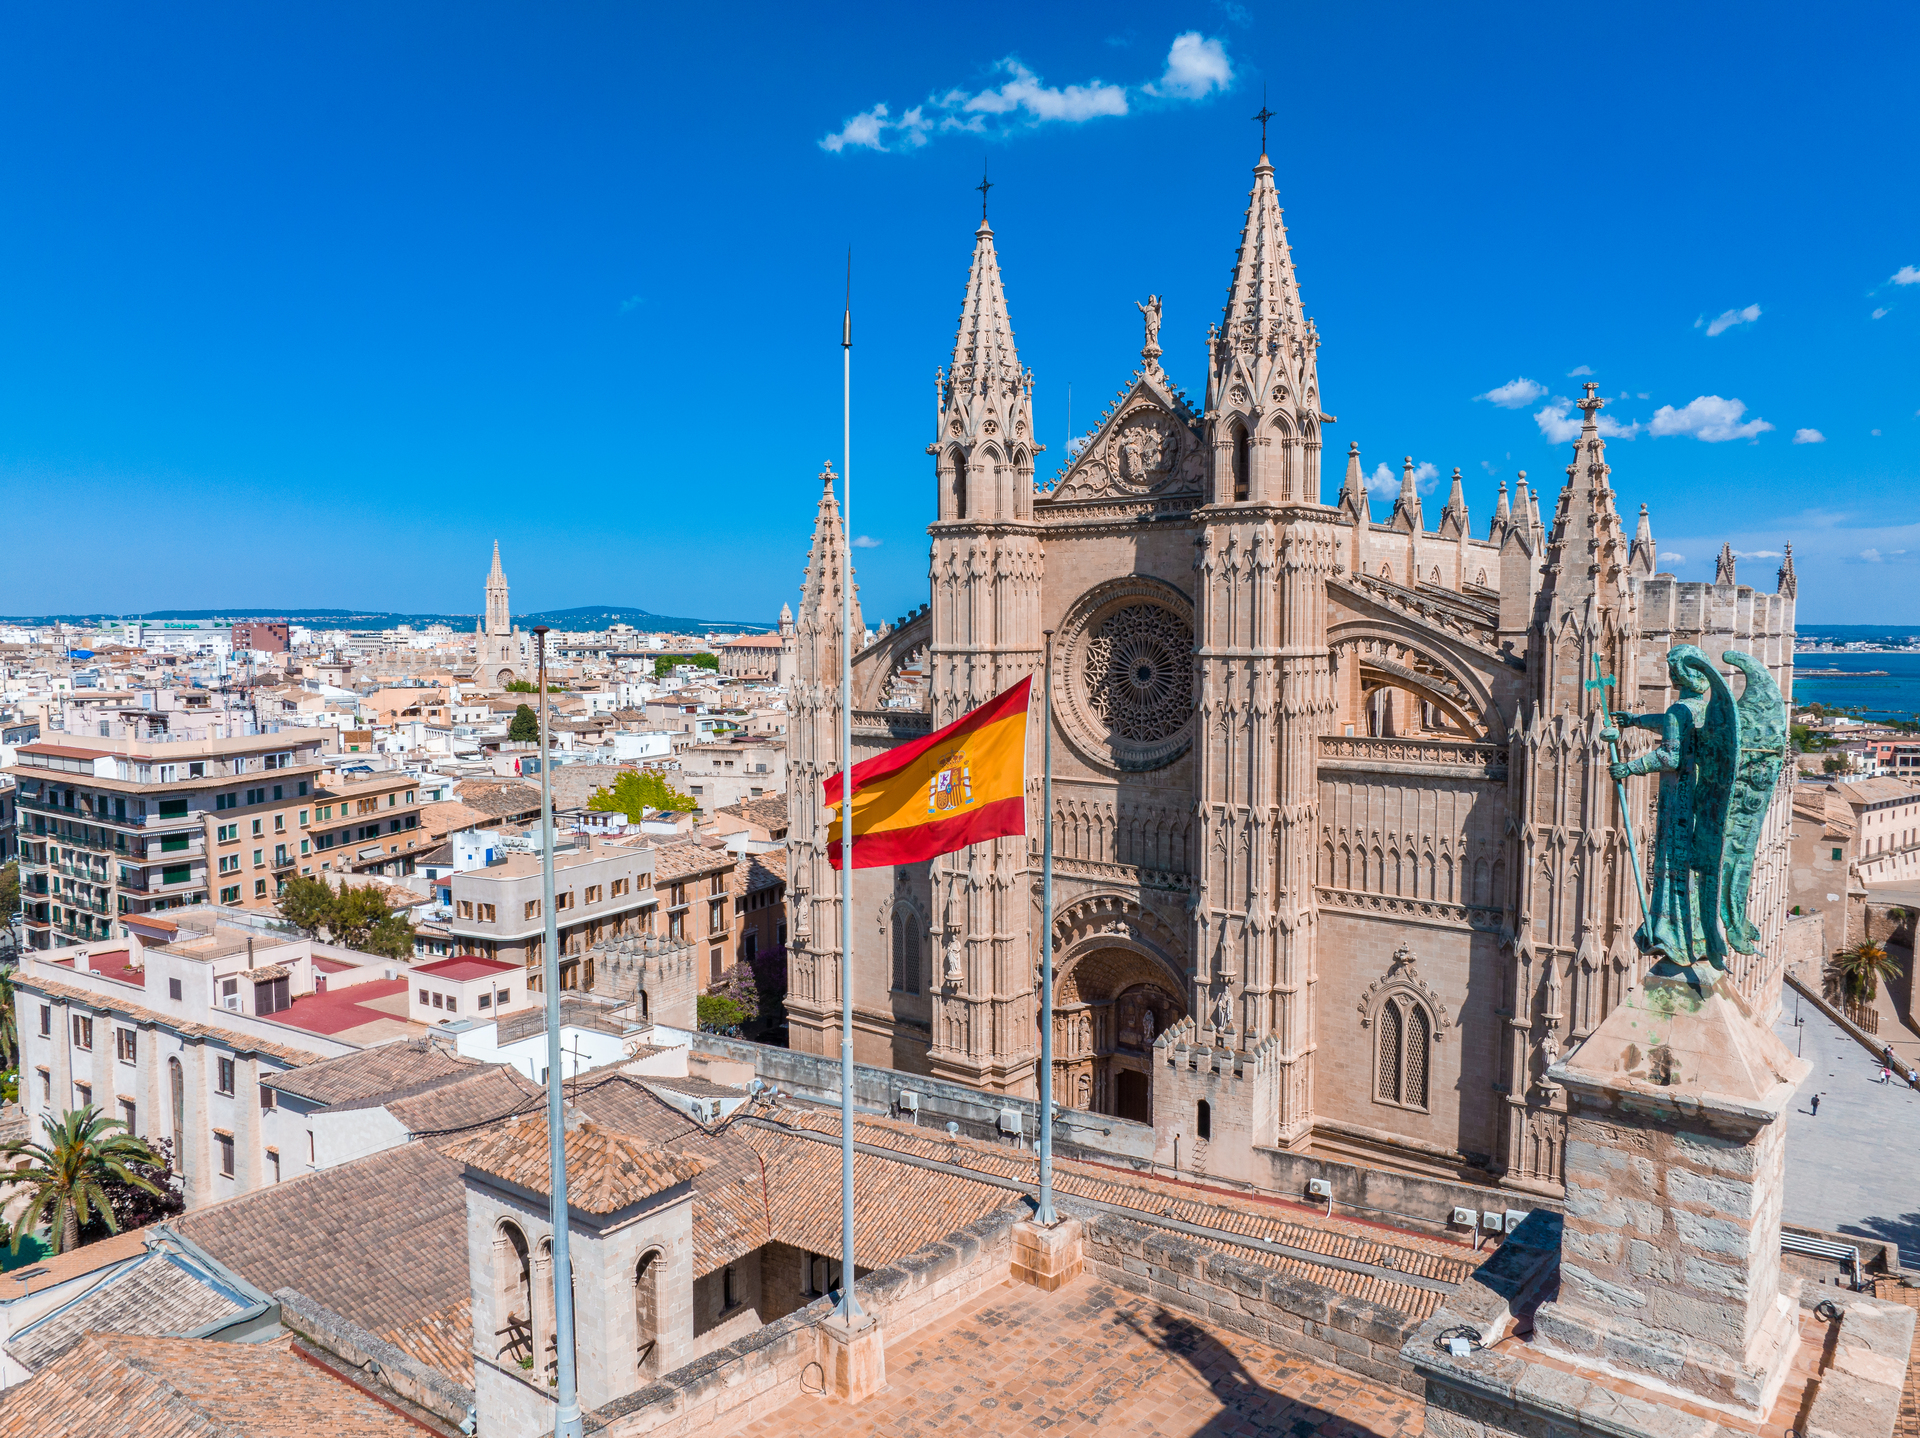 Hiszpańskie miasto z majestatycznym kościołem dominującym nad panoramą i flagą kraju